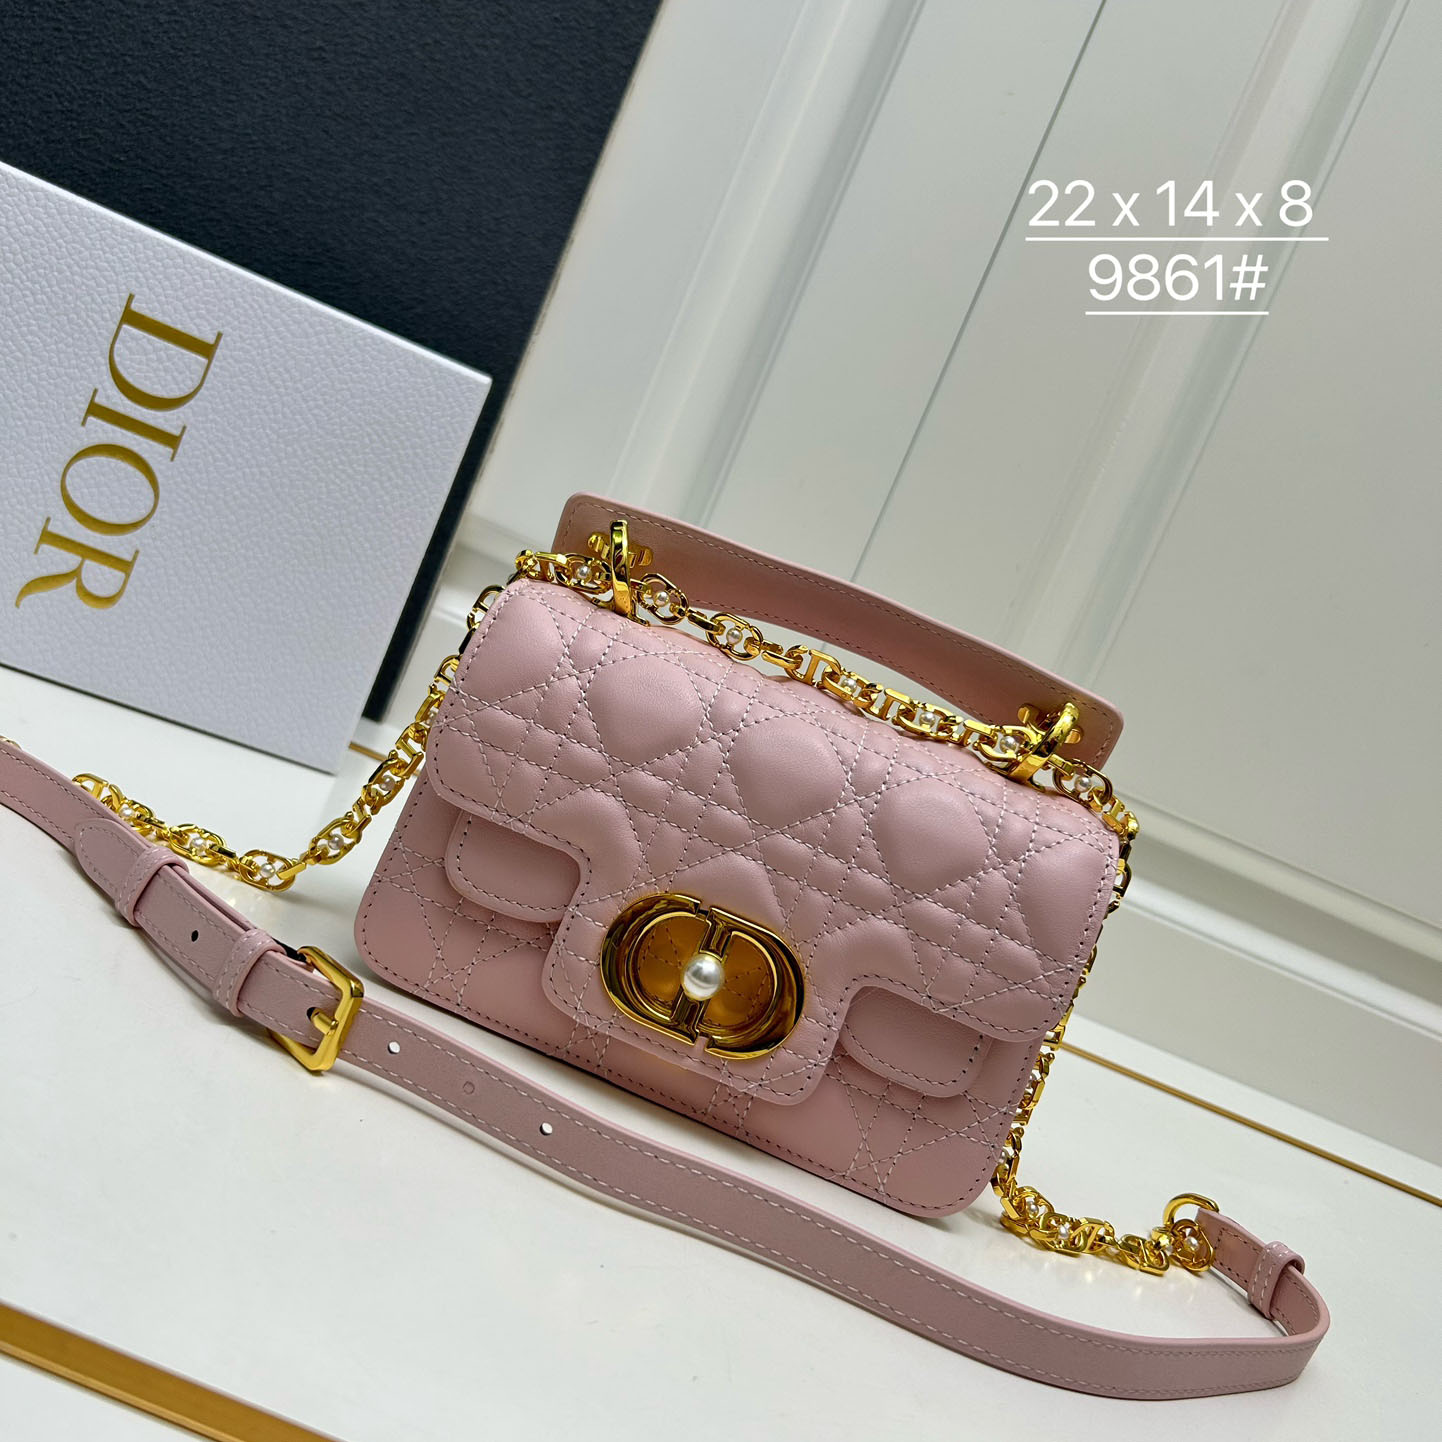 Dior Jolie トップハンドルバッグ スモール クリスチャン・ディオール バッグ コピー ピンク